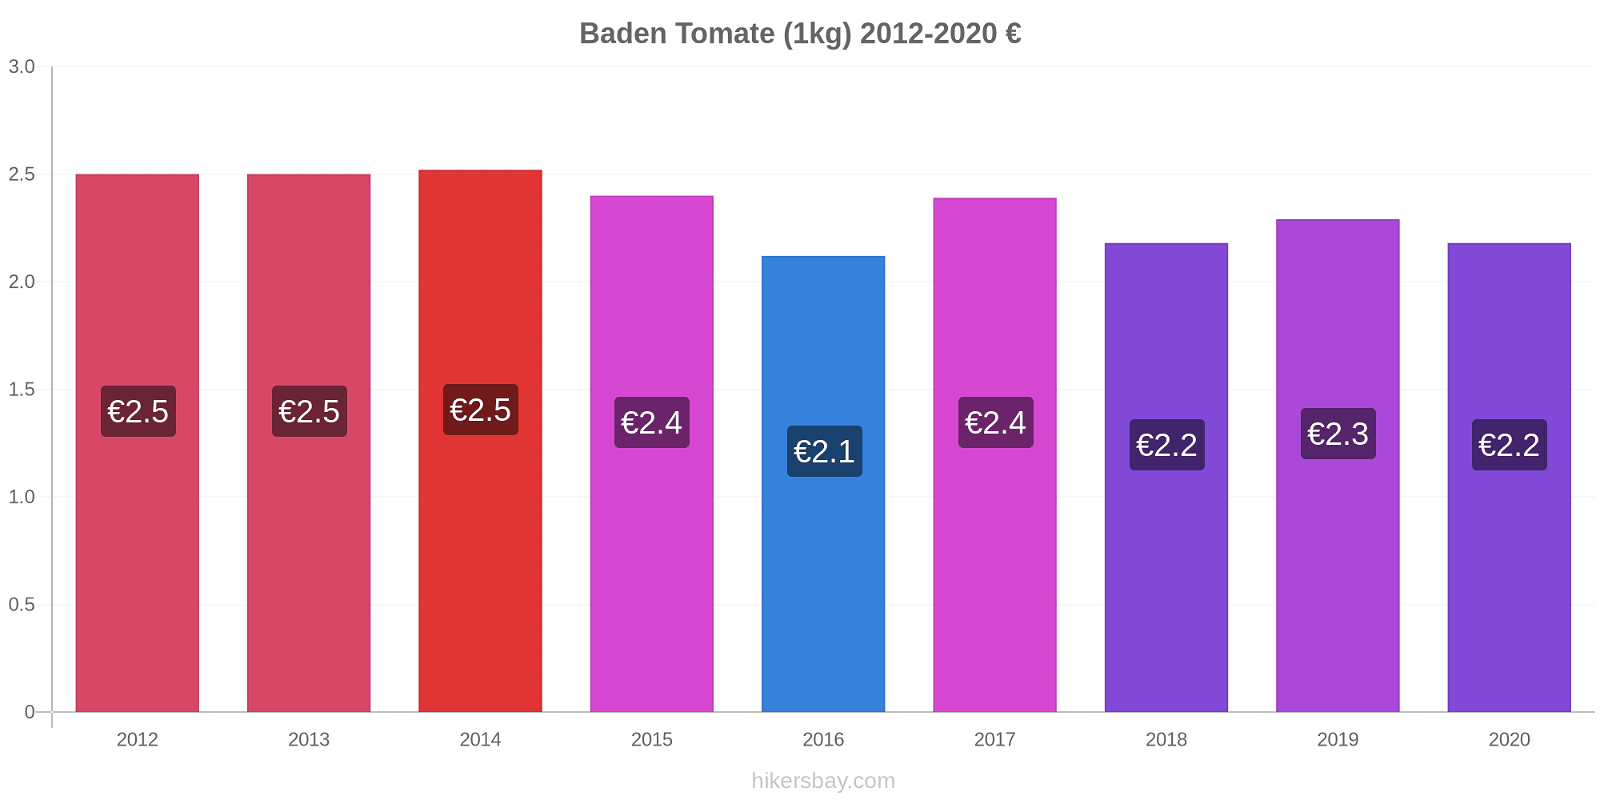 Baden Preisänderungen Tomaten (1kg) hikersbay.com